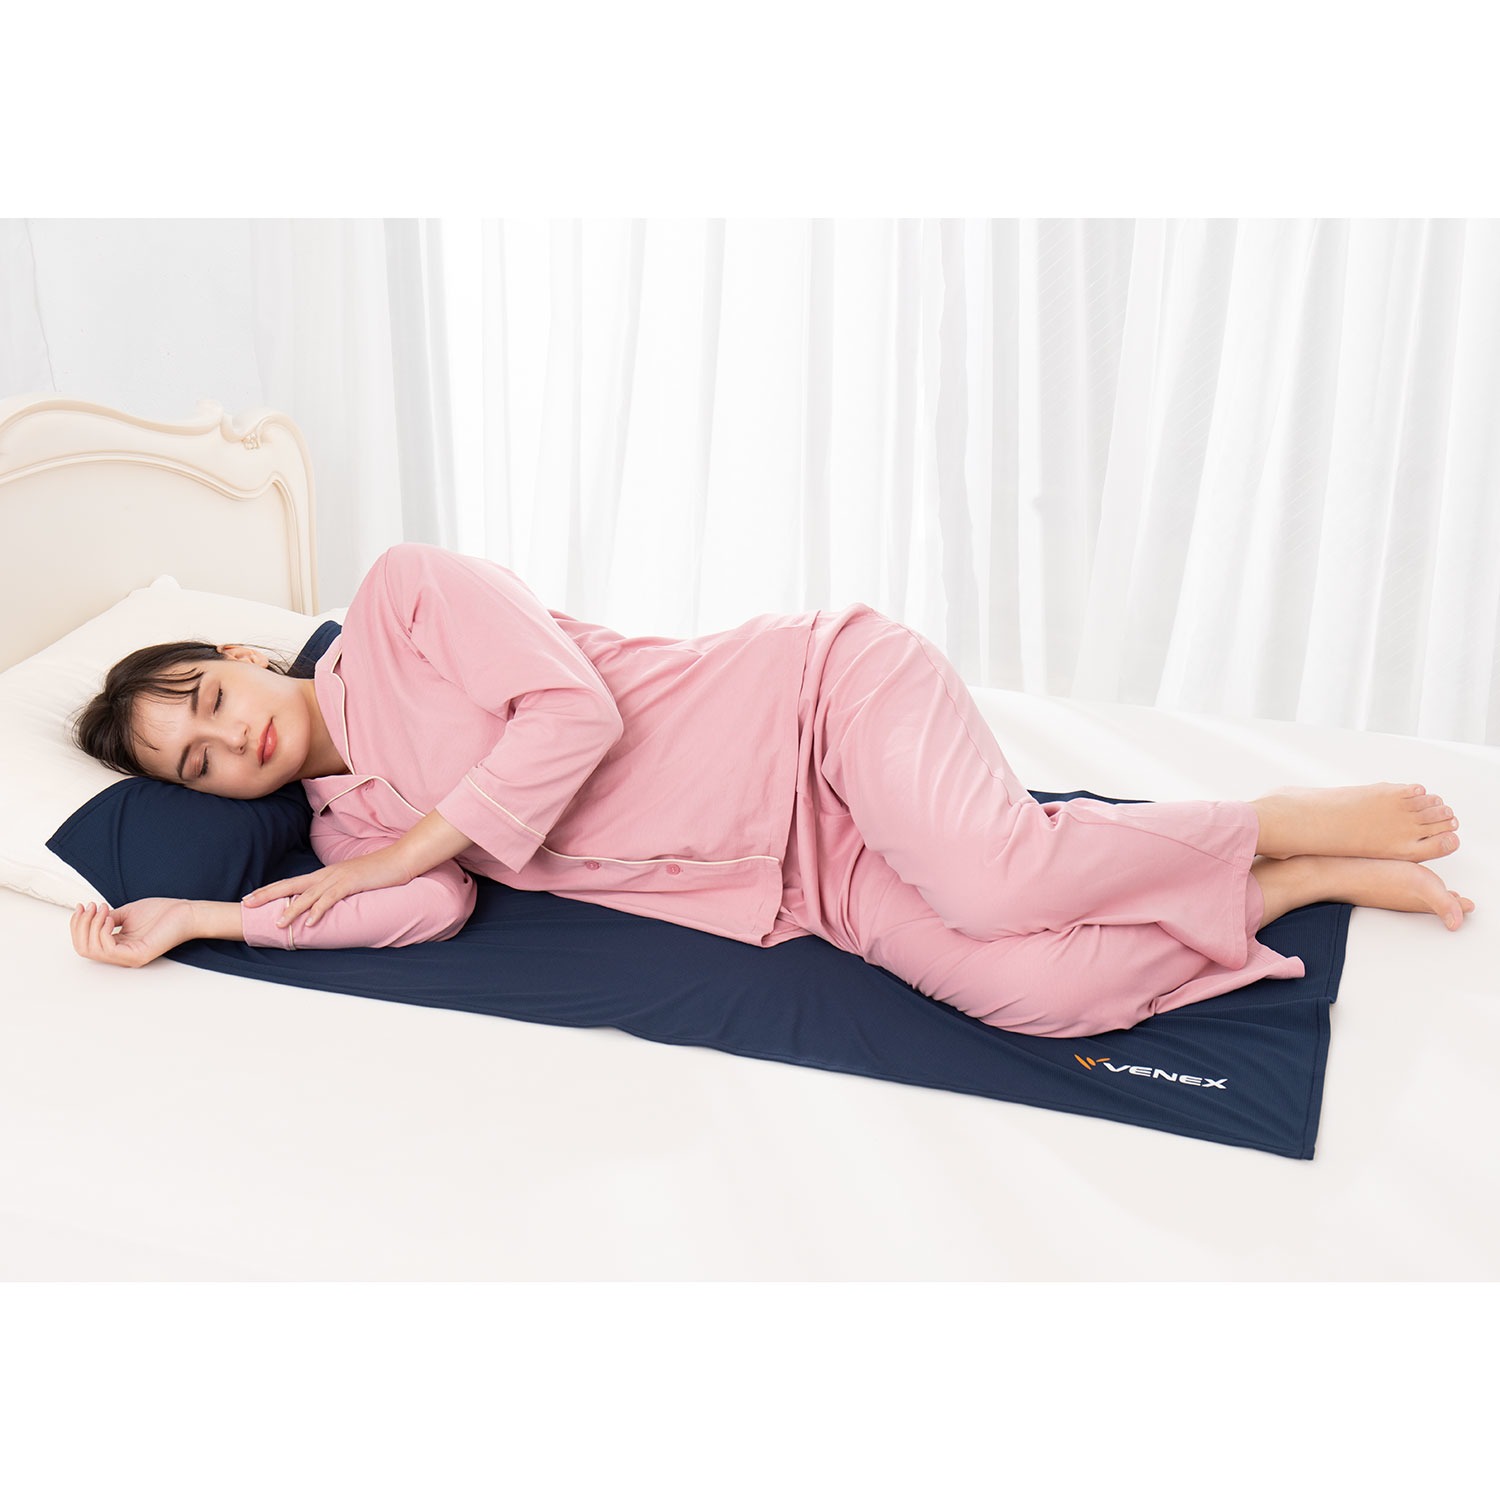 上質な睡眠環境と 積極的な休養を ベネクス クロスプラス